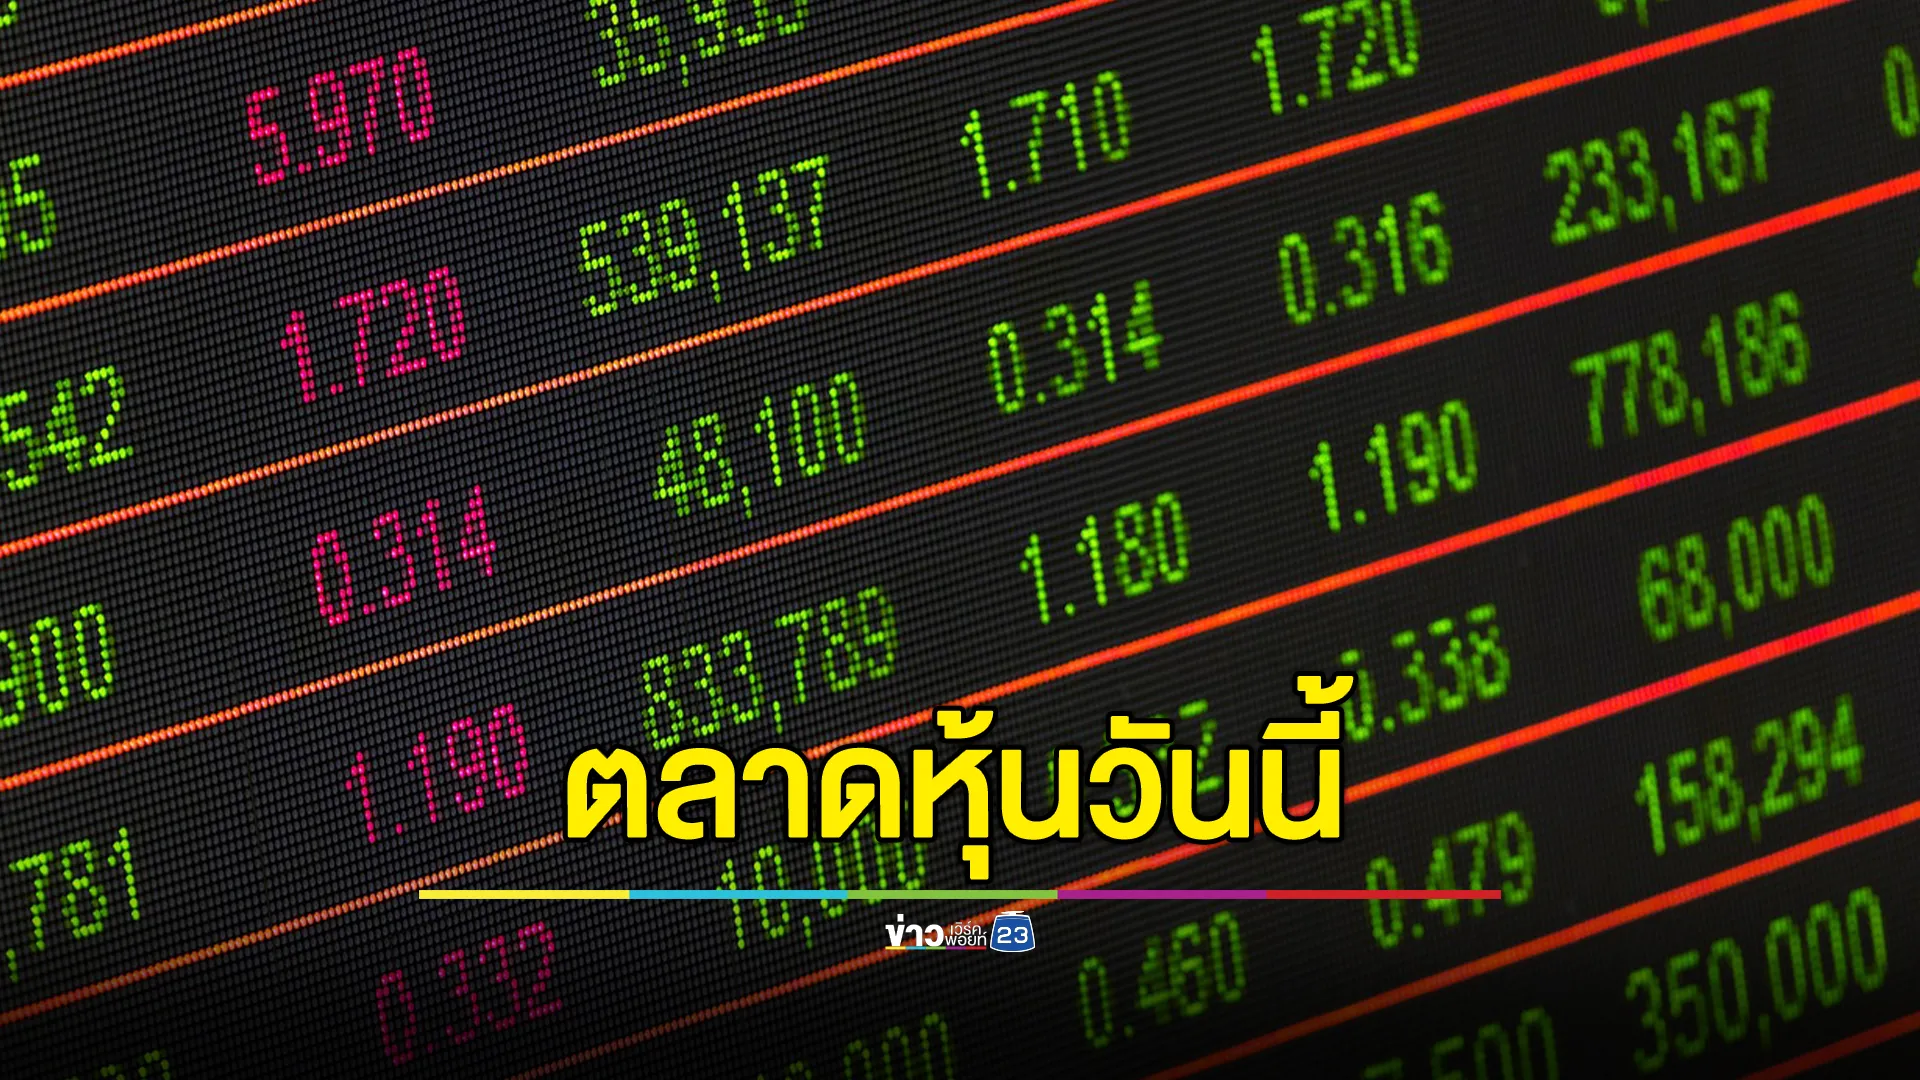 อัปเดต"ตลาดหุ้นไทย"วันนี้ ปิดตลาดอยู่ที่ 1370.44 ลดลง -6.13 จุด